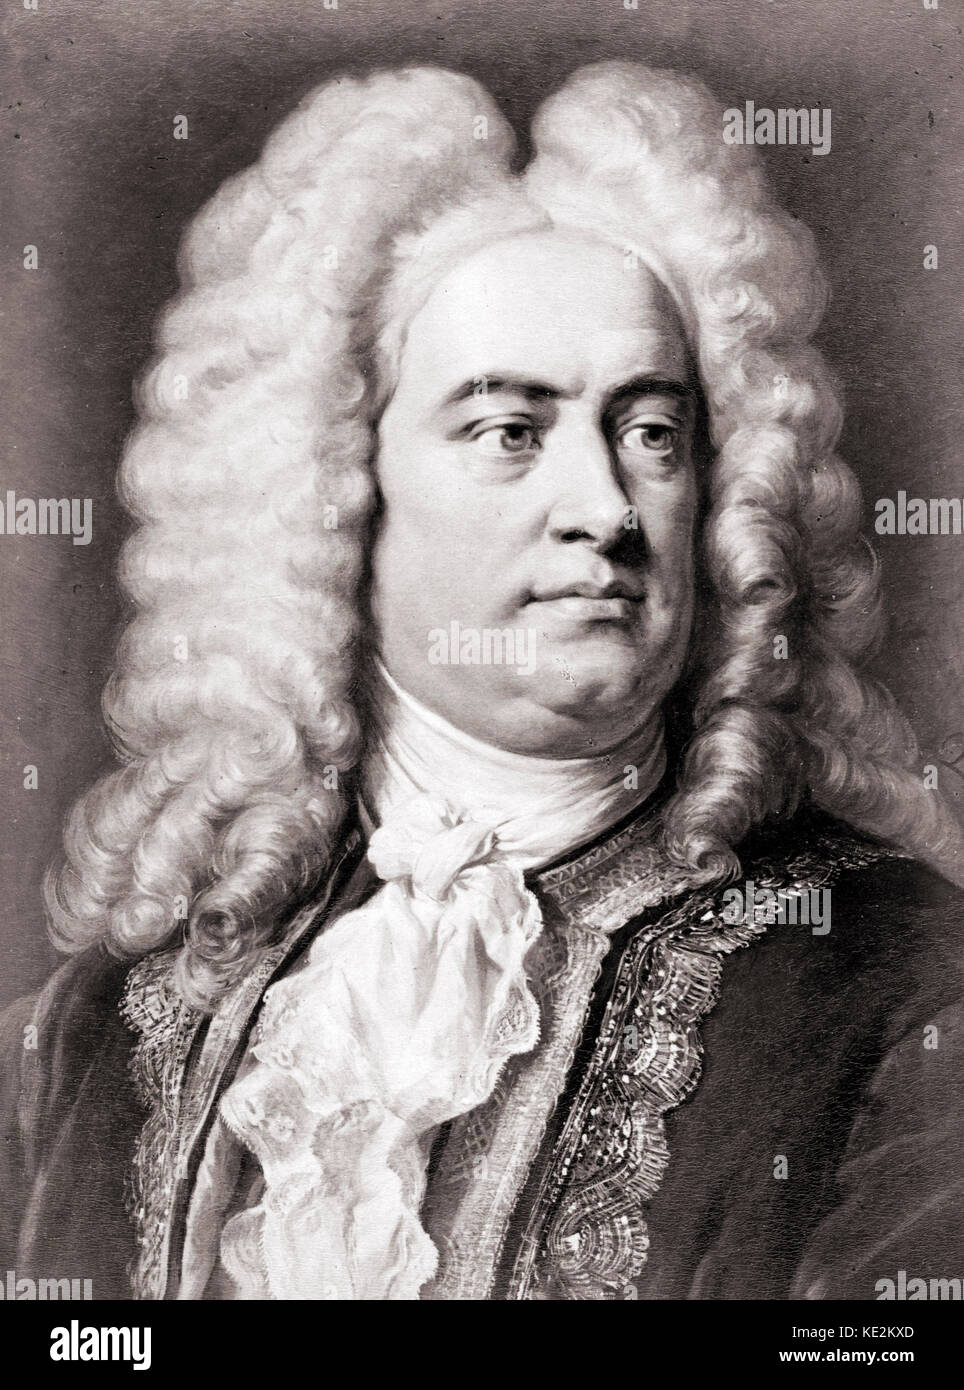 George Frideric Handel - portrait de l'compositeur allemand par G. Jager. 23 février 1685 - 14 avril 1759. Banque D'Images